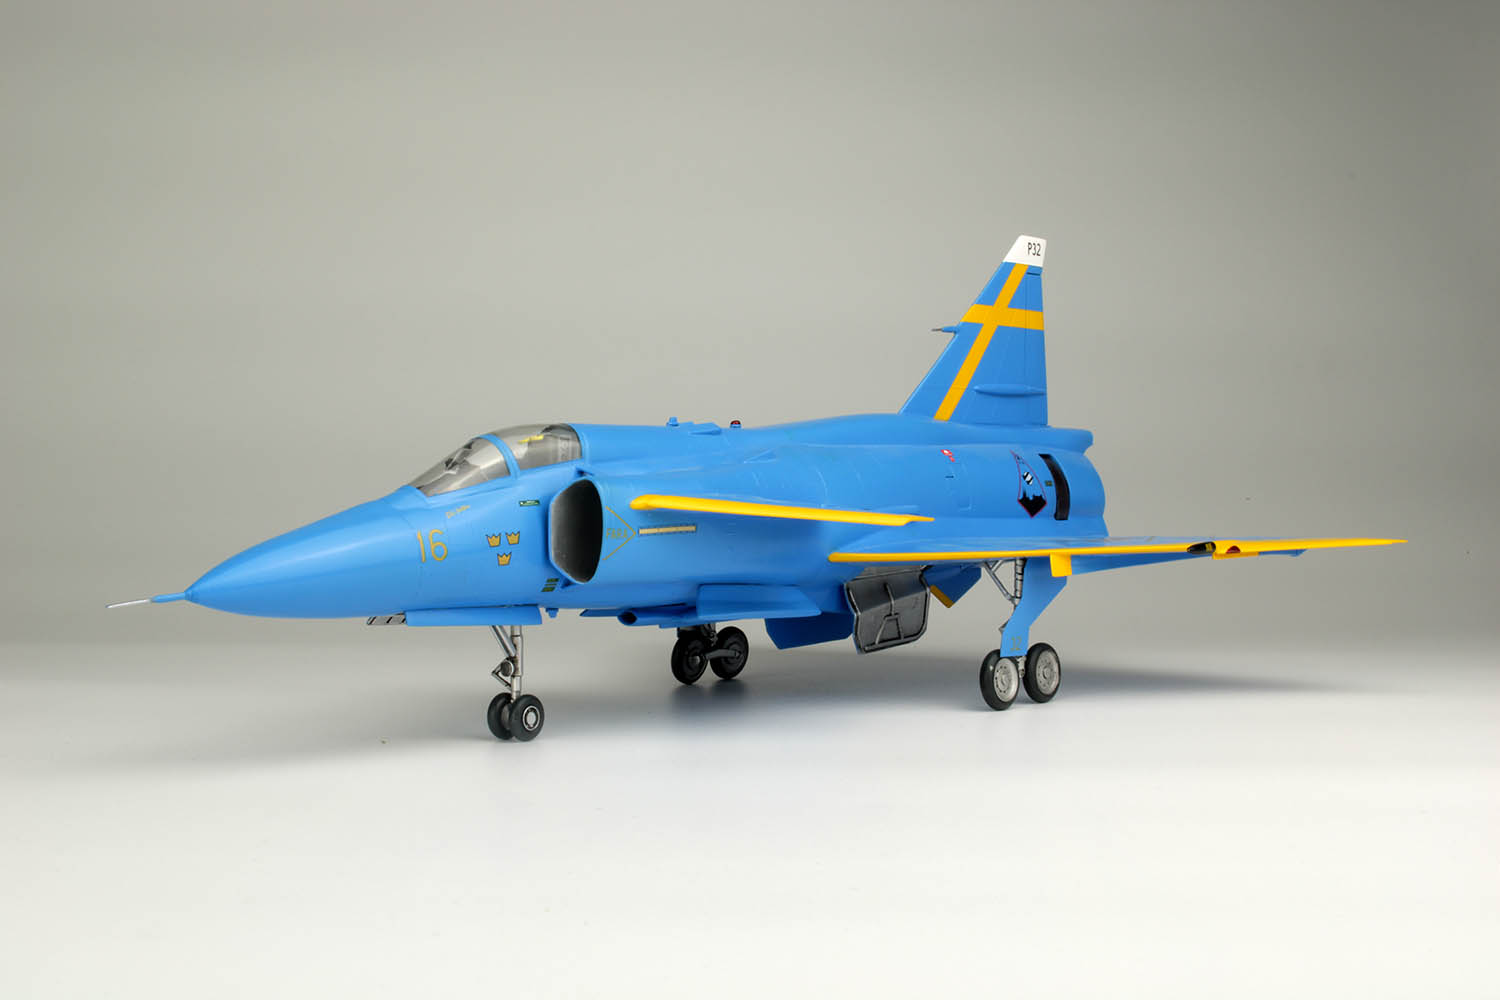 1/48 スウェーデン空軍 JA37 ヤクトビゲン "ブルーピーター" スウェーデン空軍75周年記念塗装機 - ウインドウを閉じる